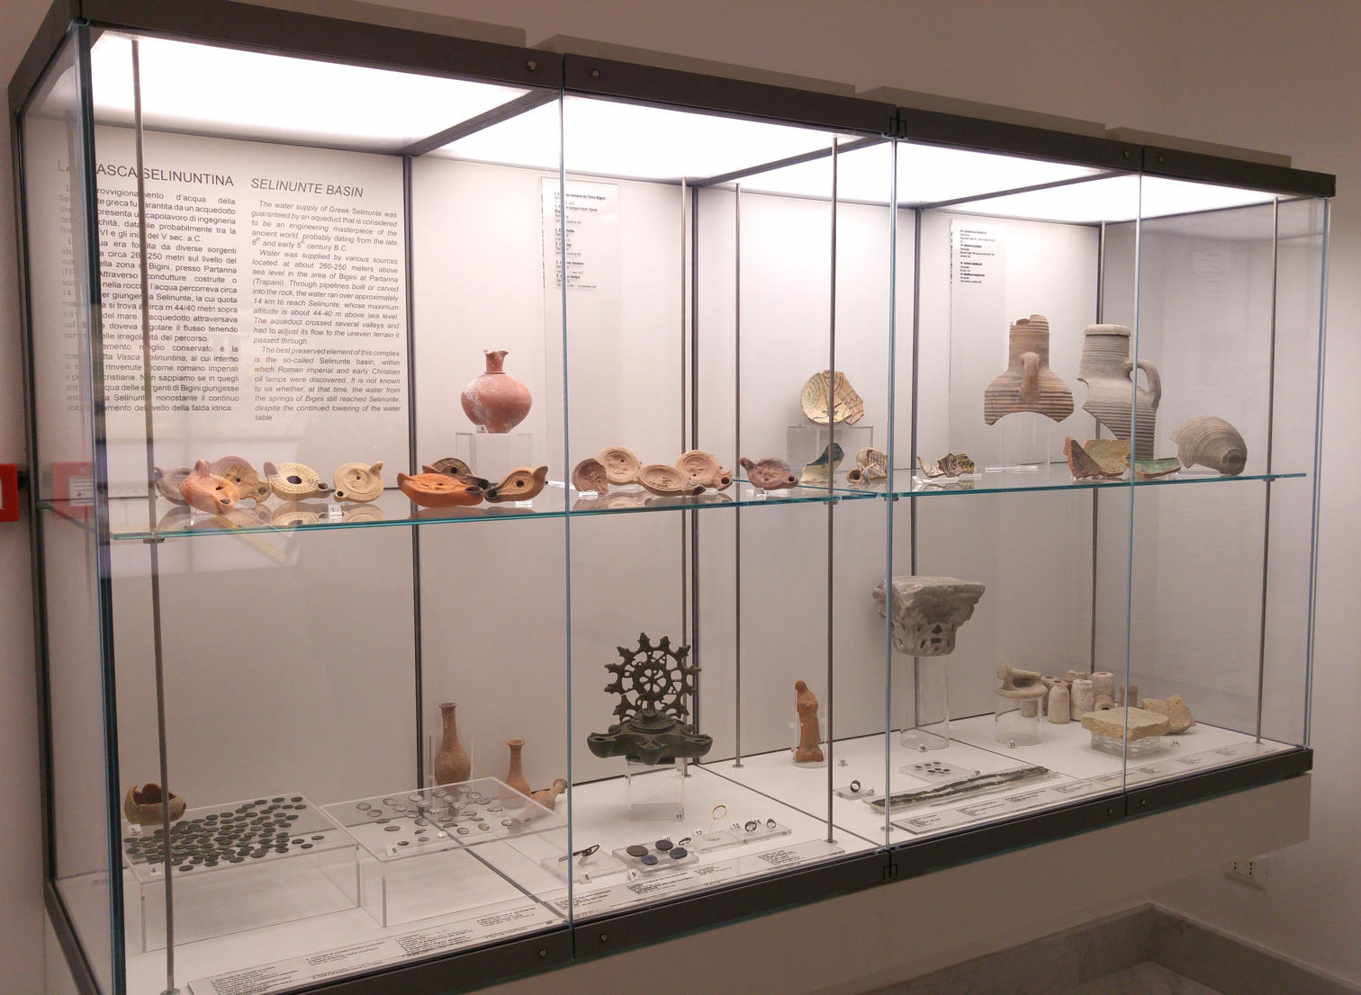 Museo Arqueológico Antonio Salinas - Selinunte - mostrador con hallazgos de varias épocas